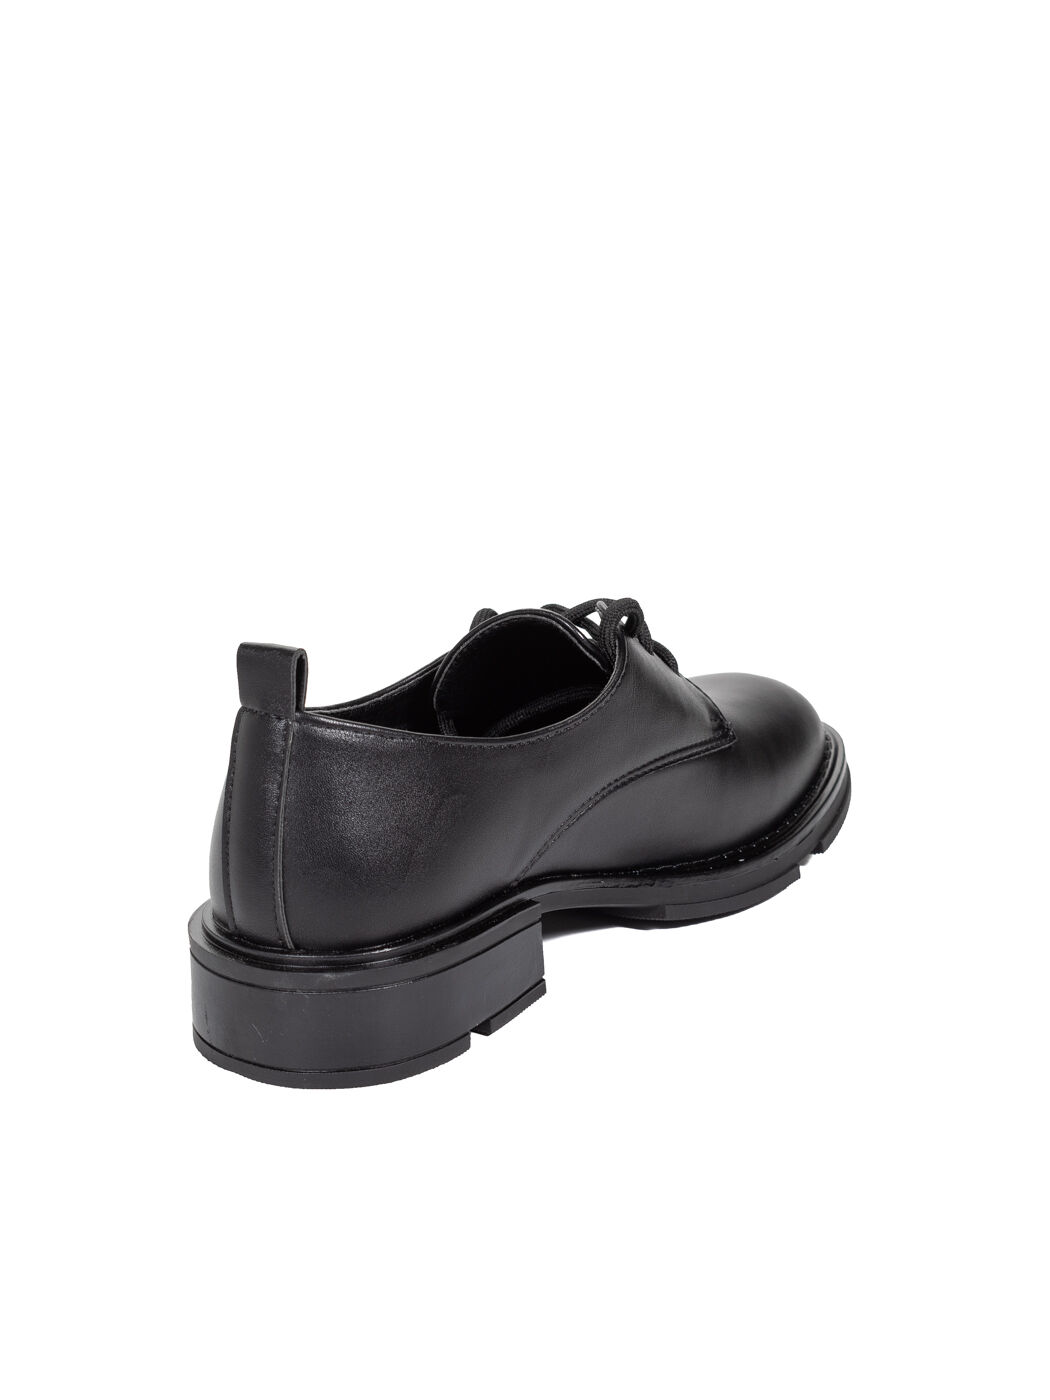 Туфли Oxfords женские черные экокожа каблук устойчивый демисезон 5M вид 2